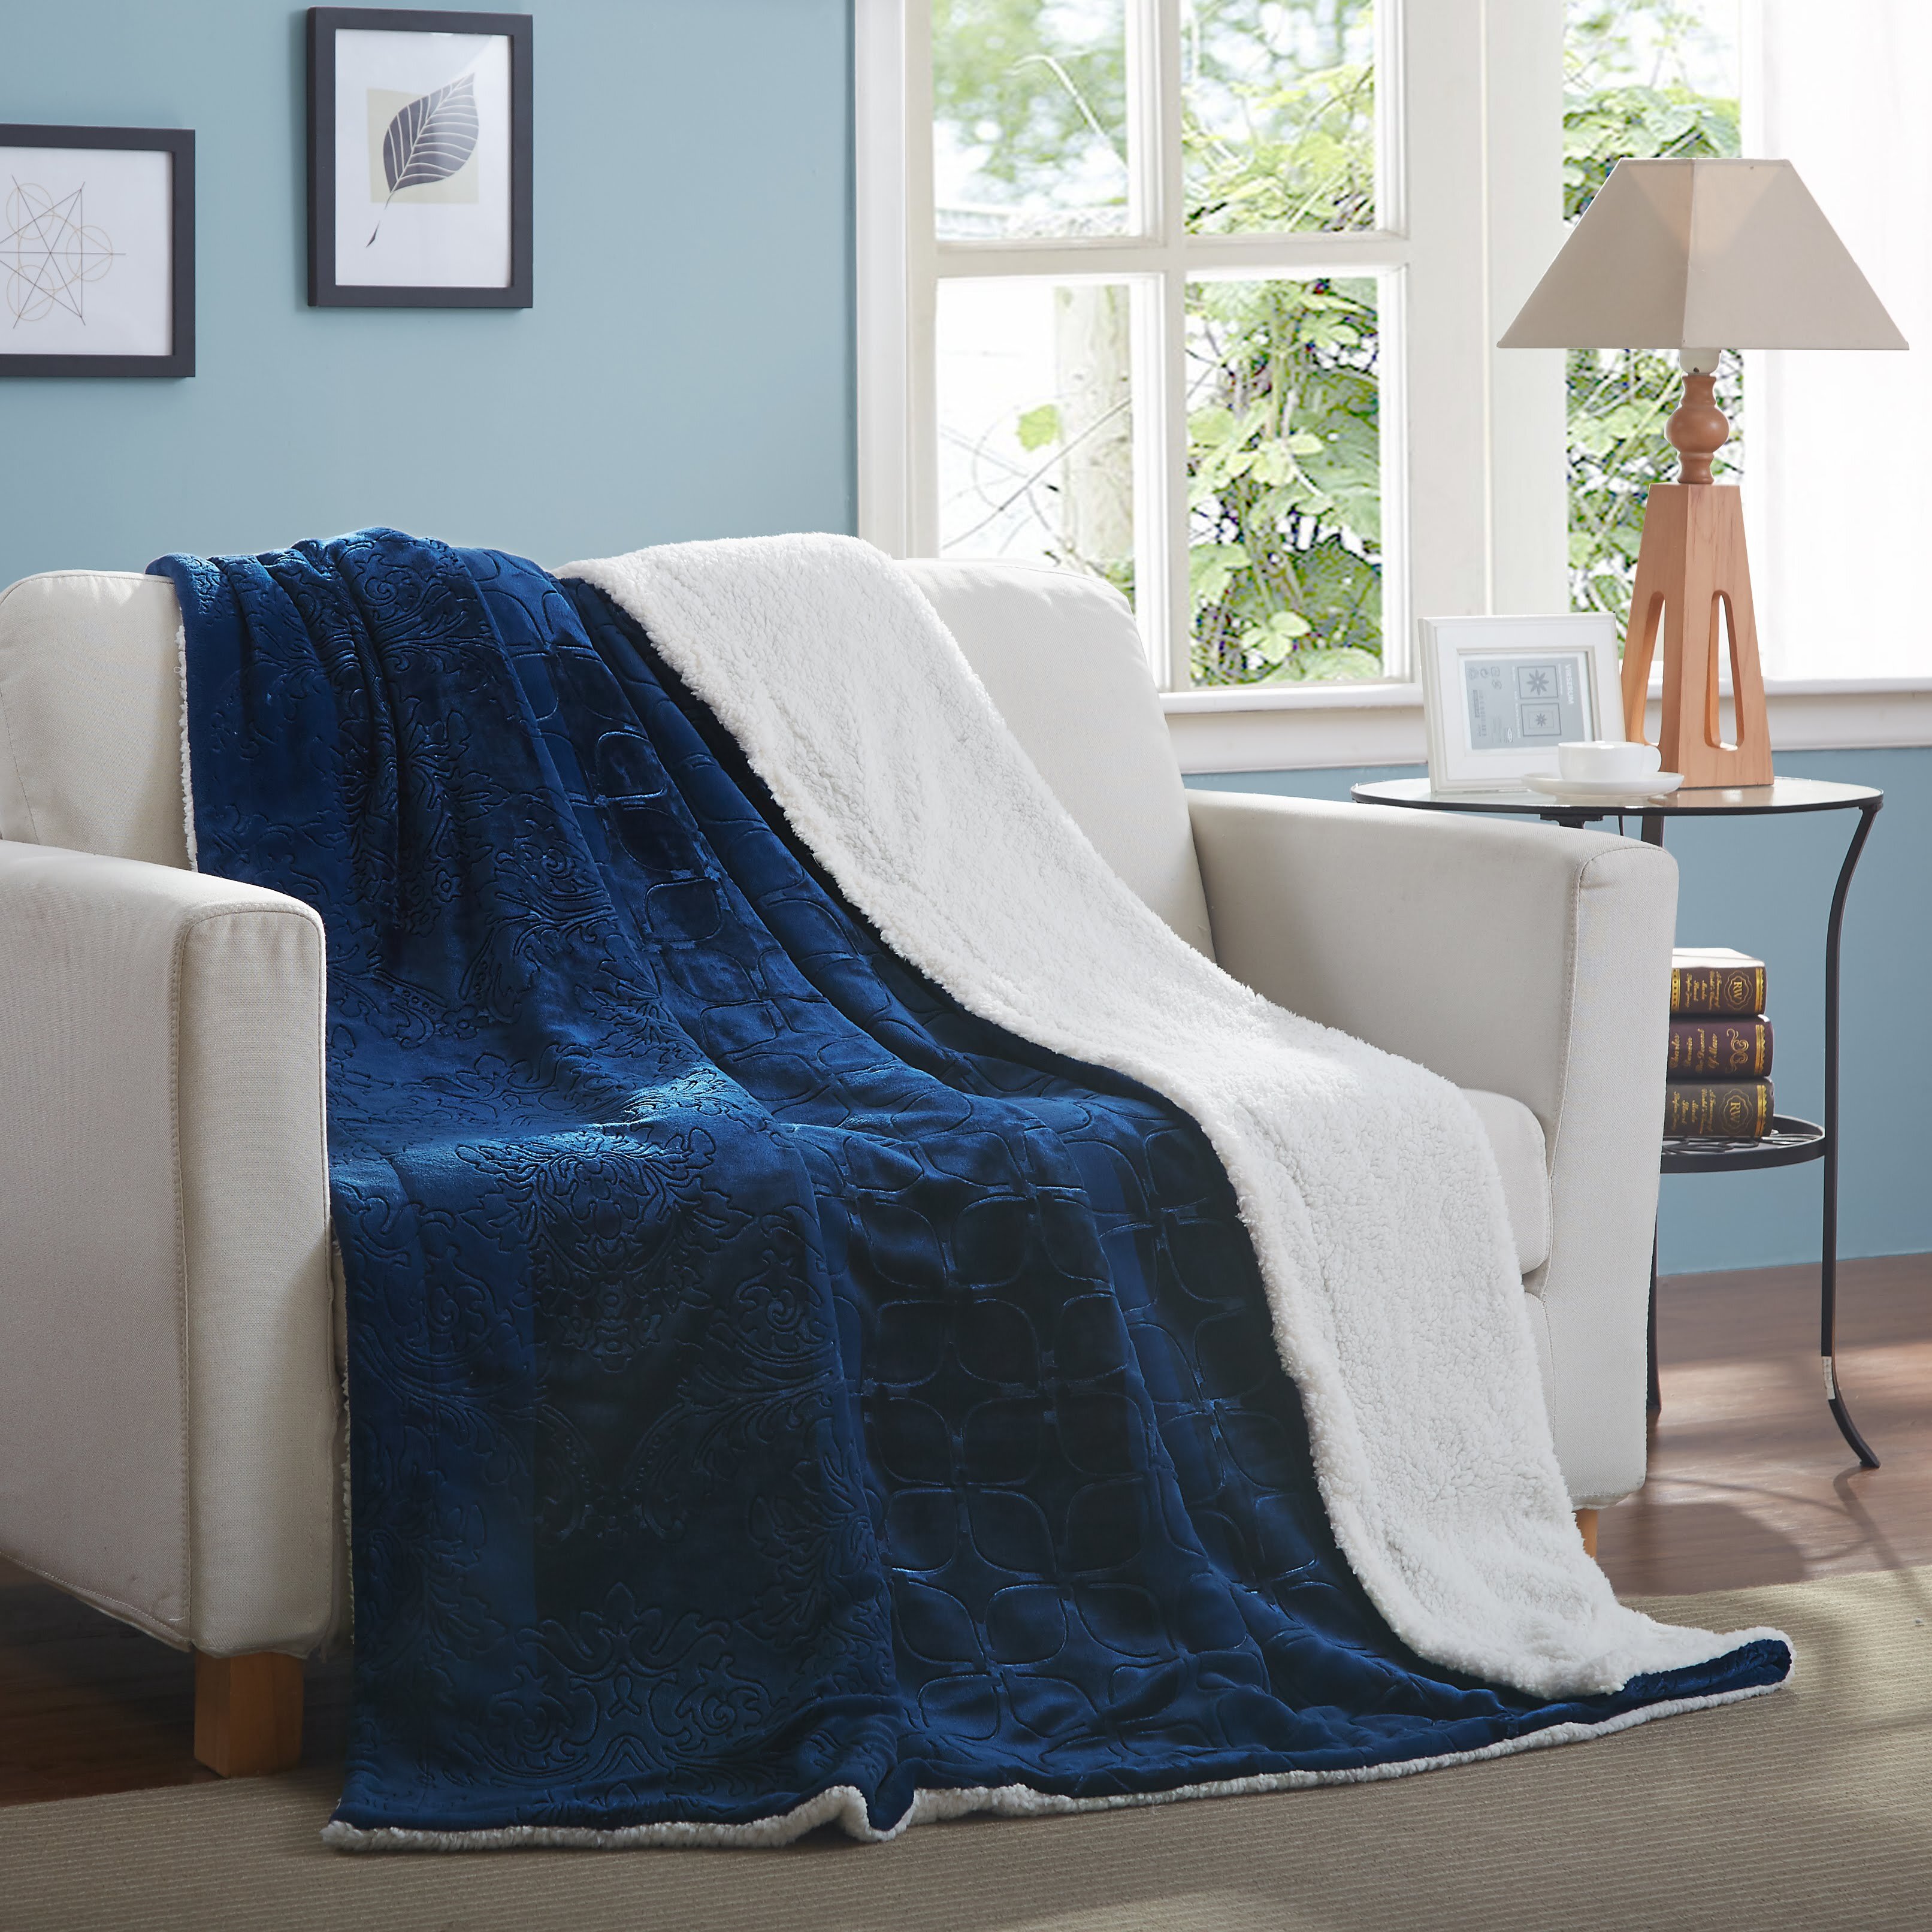 AUISS Plush Throw Velvet Blanket Leo Horoscope Fluffy Fleece Carpet Office Sofa for Men Cozy Sleep Mat Pad Flannel Cover for All Season 